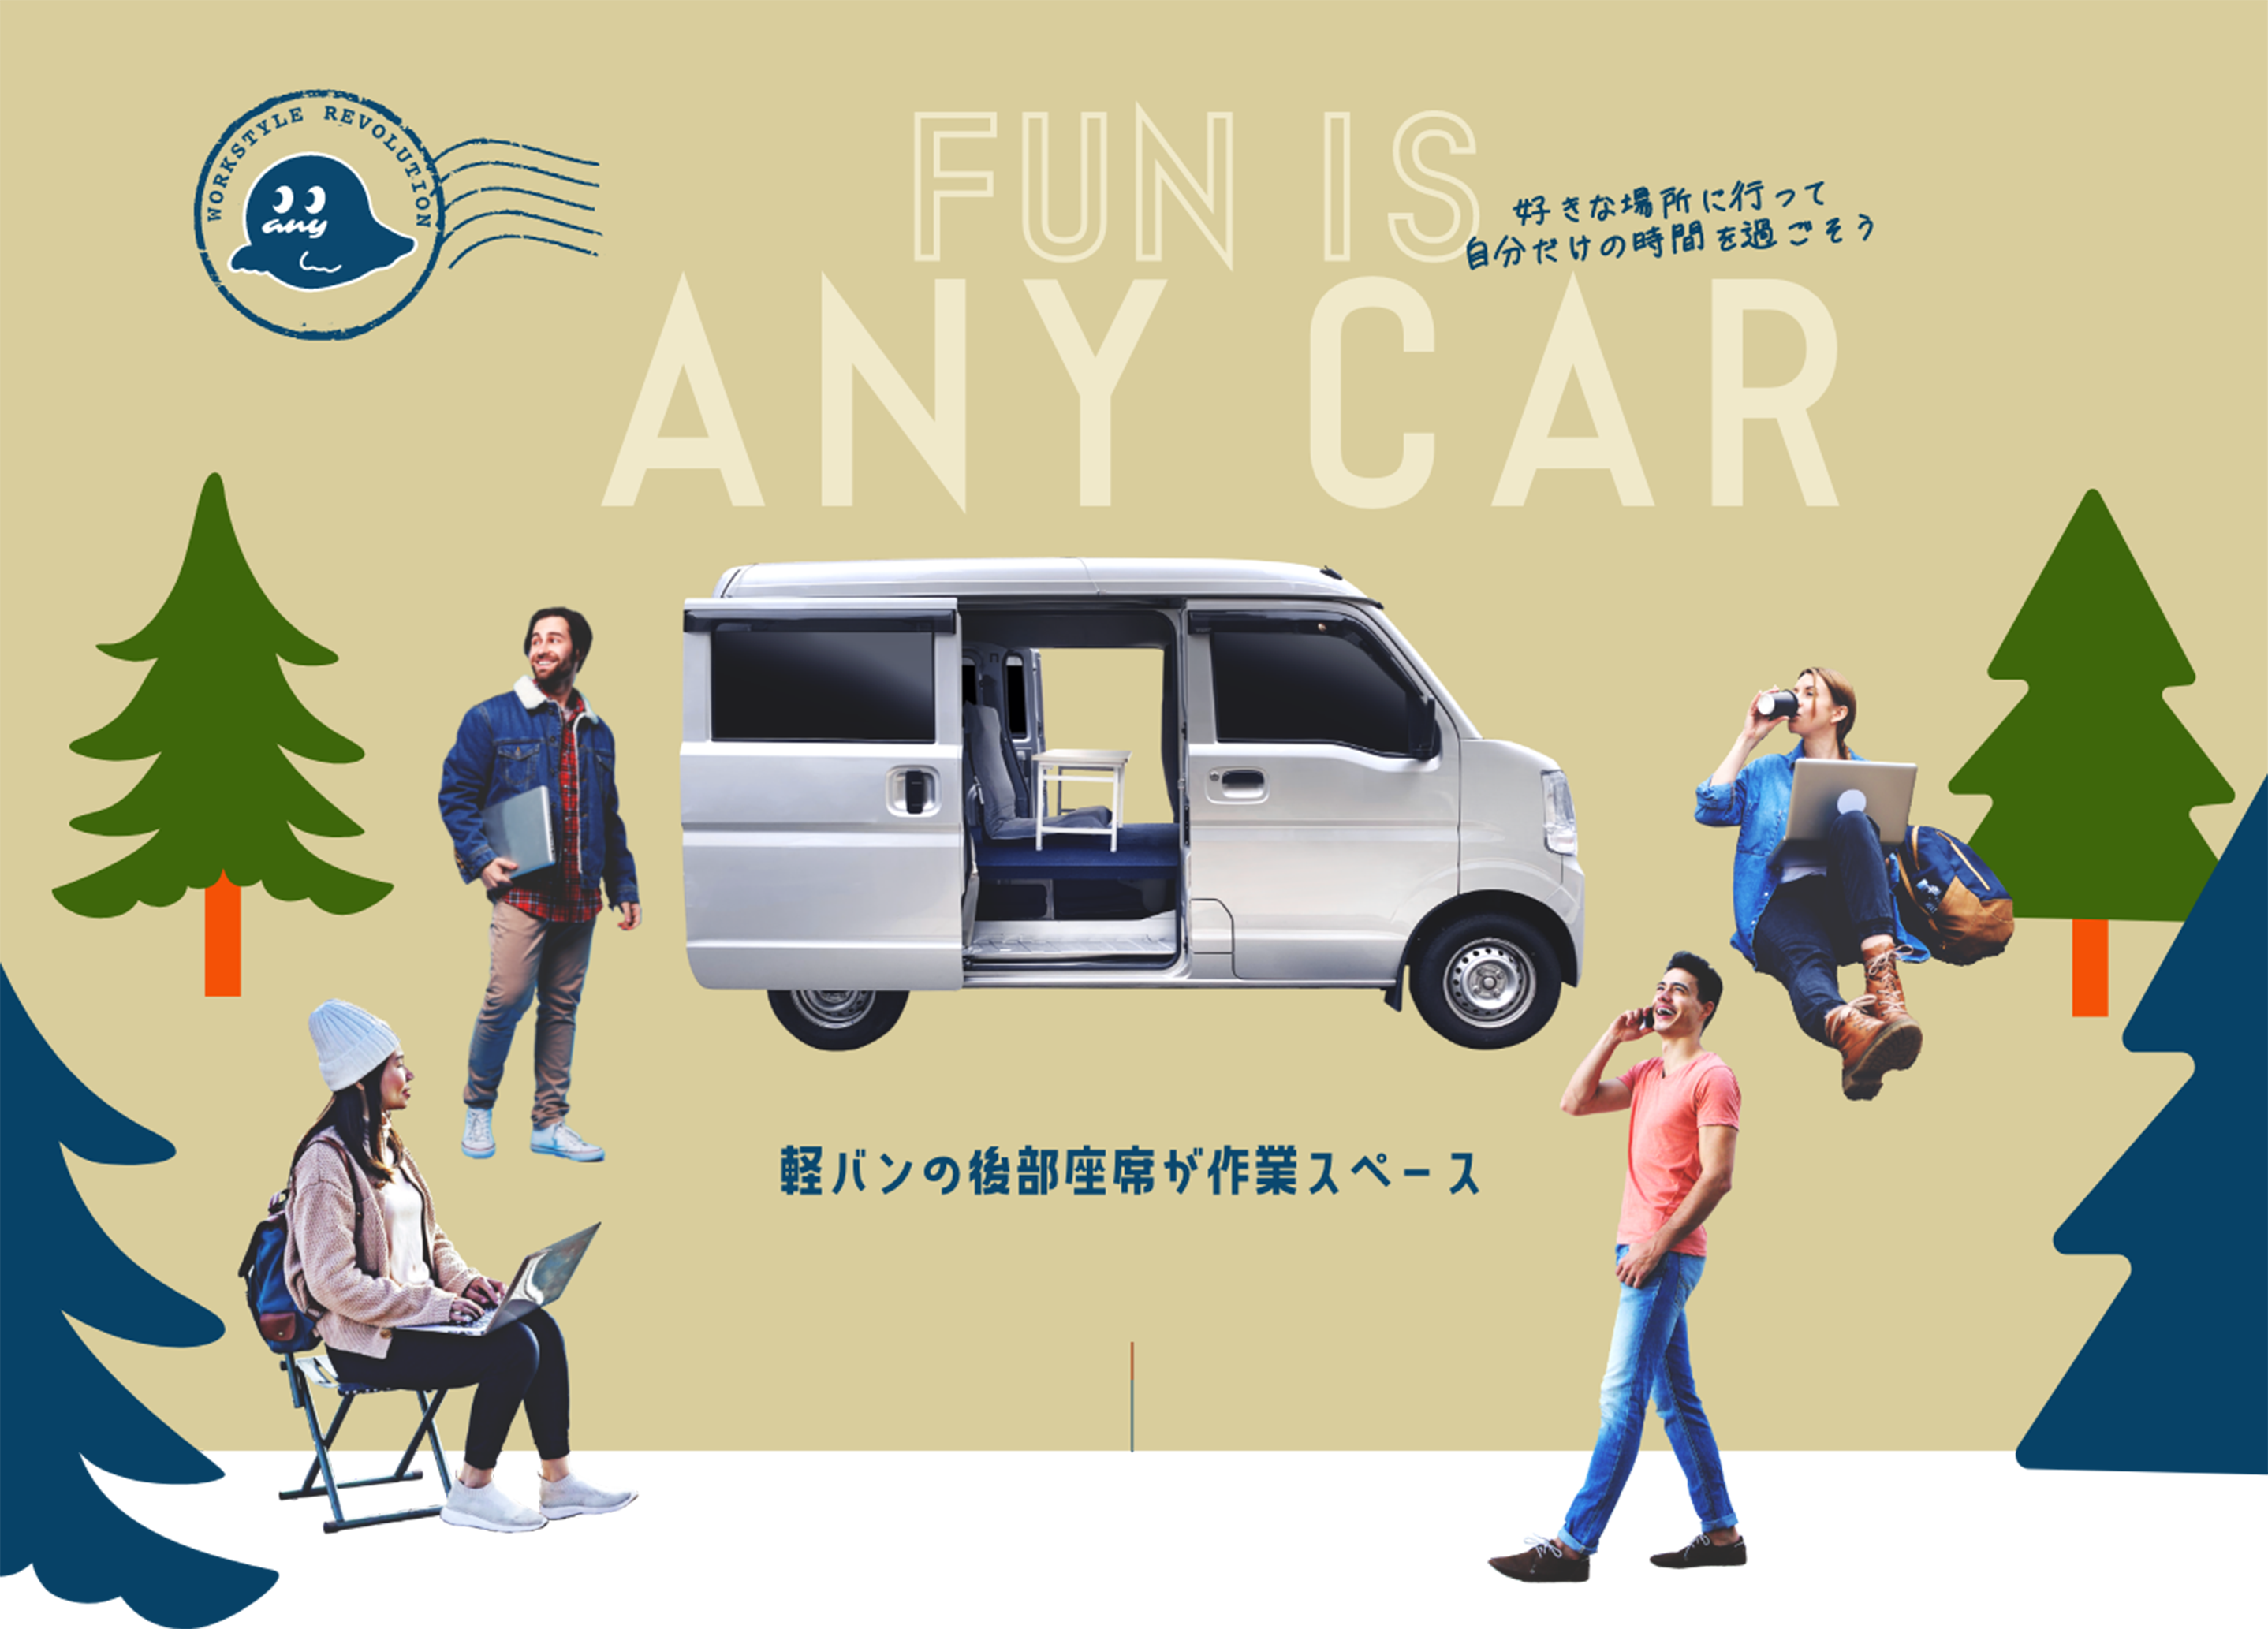 Fun is ANY CAR